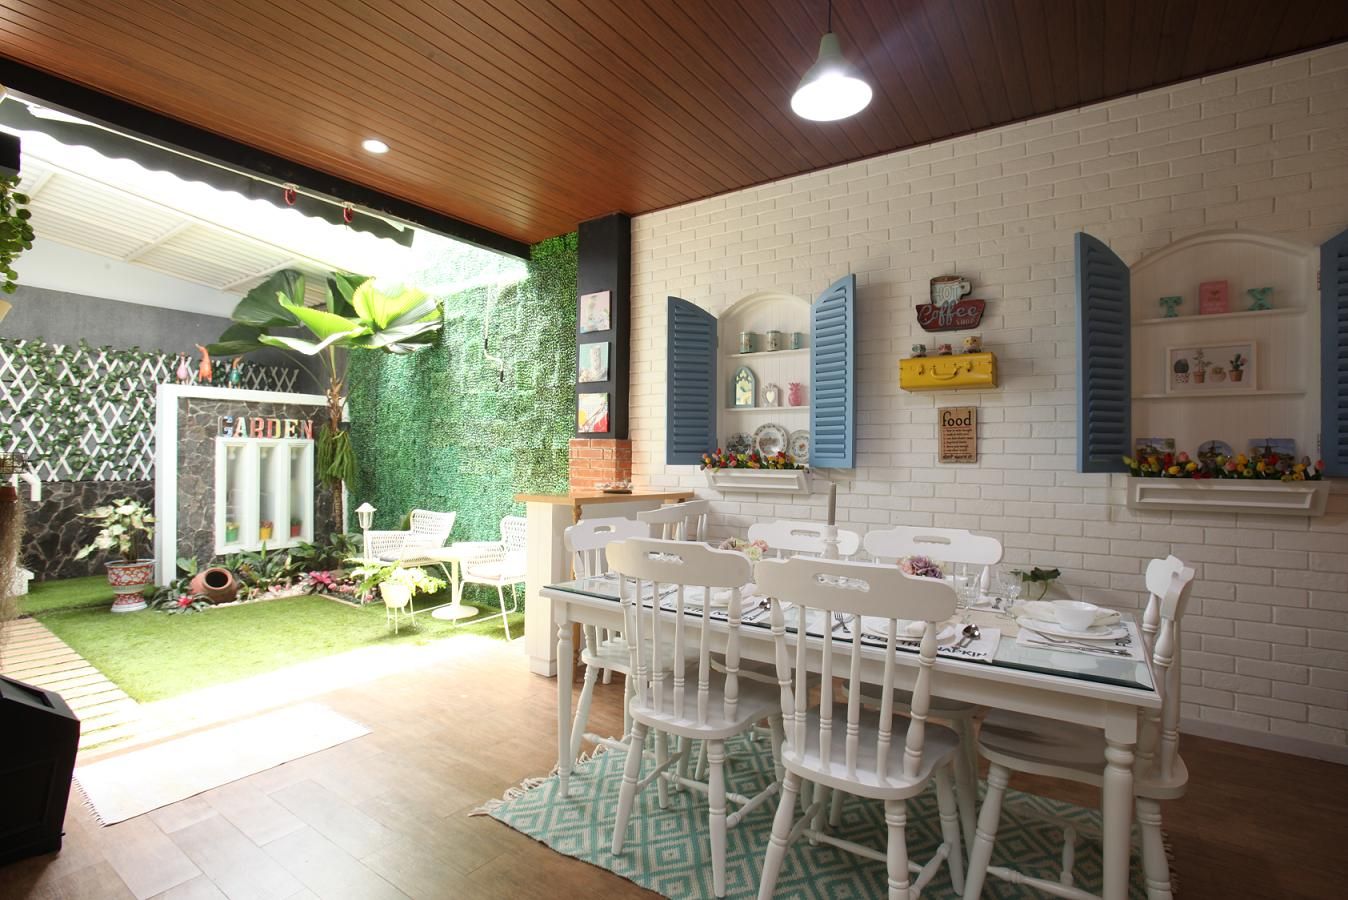 Desain Interior Ruang Keluarga Menyatu Dengan Taman Belakang | Cek